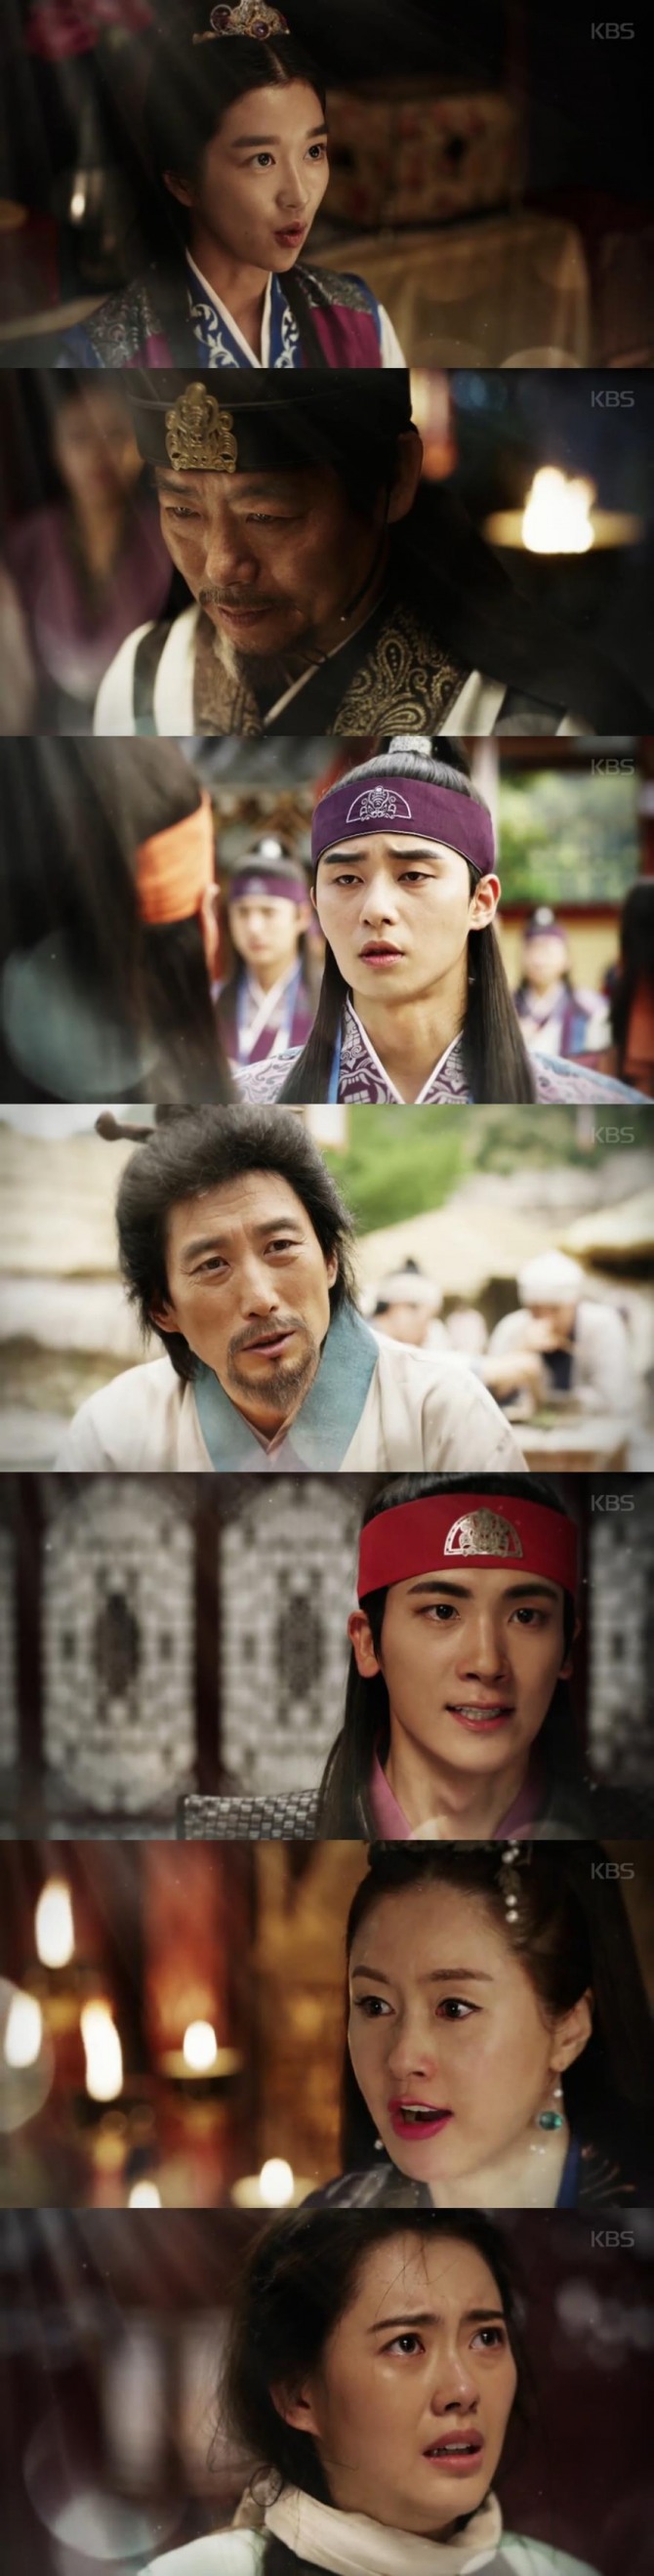 17일 방송되는 KBS2 월화드라마 '화랑' 10회에서 지소 태후(김지수)는 아로(고아라)를 납치하고, 진흥왕인 삼맥종(박형식)은 지소 태후에게 격렬하게 반발하는 장면이 그려진다./사진=KBS2 영상 캡처